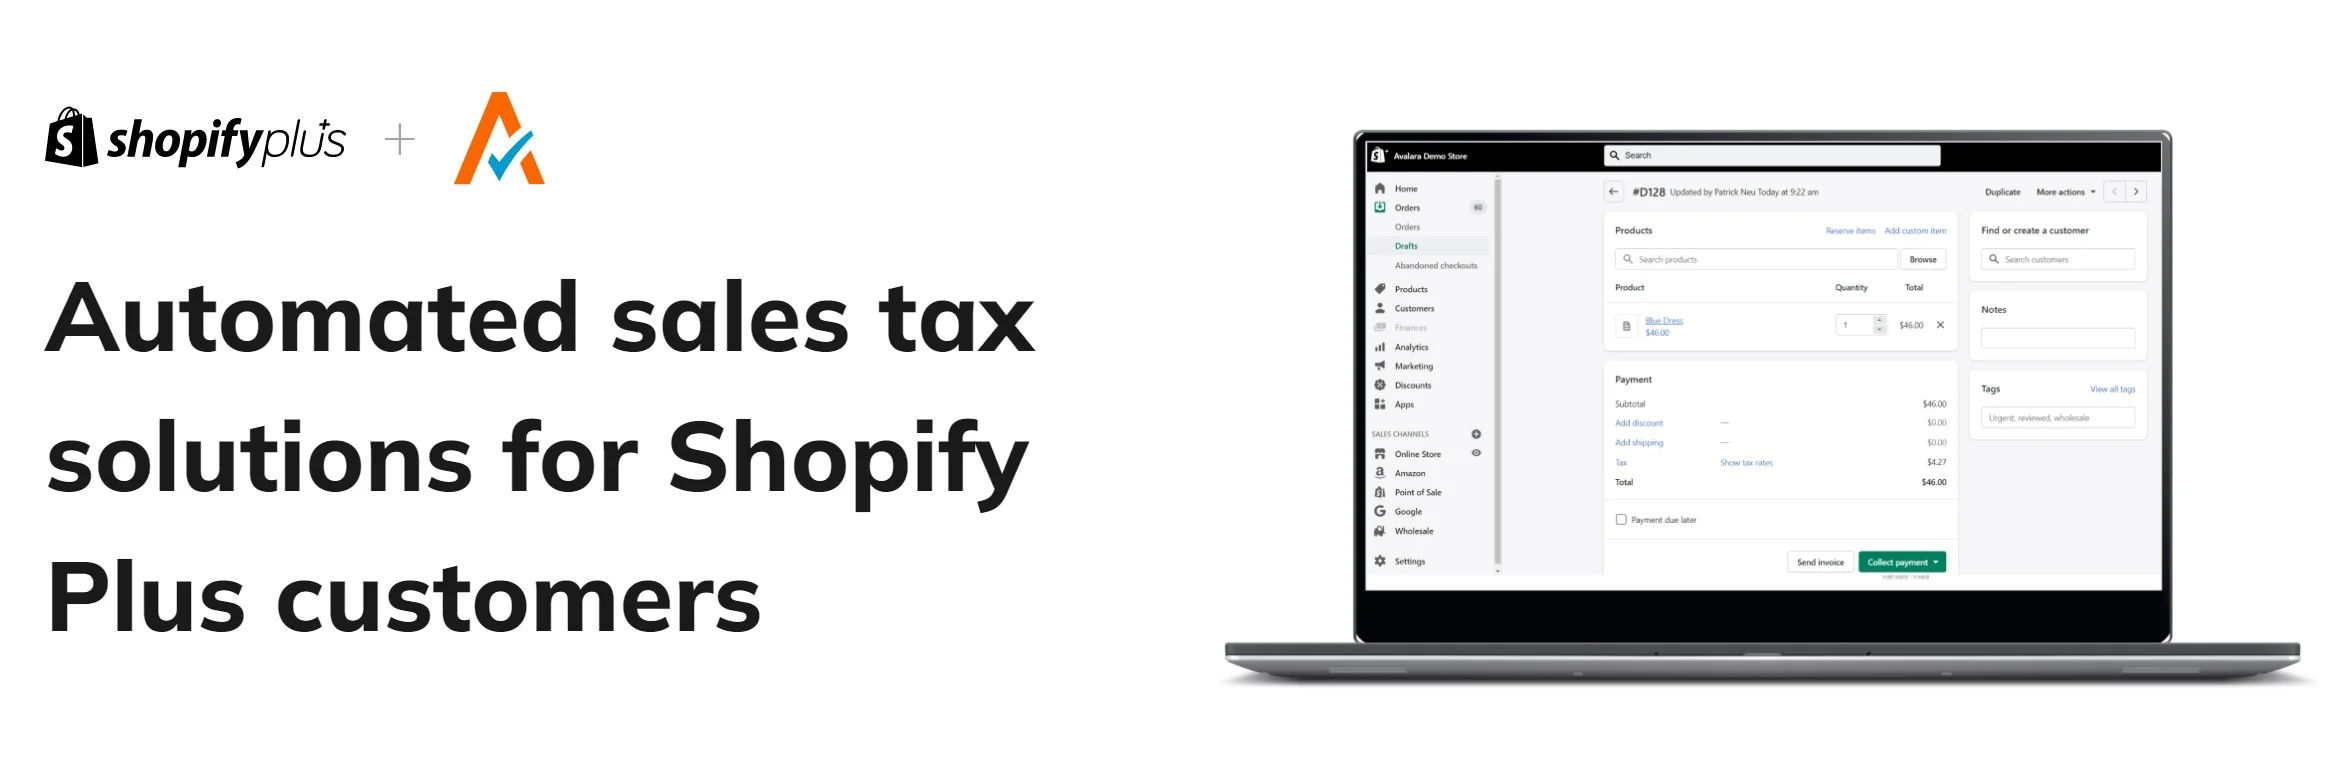 Shopify Plus sales tax